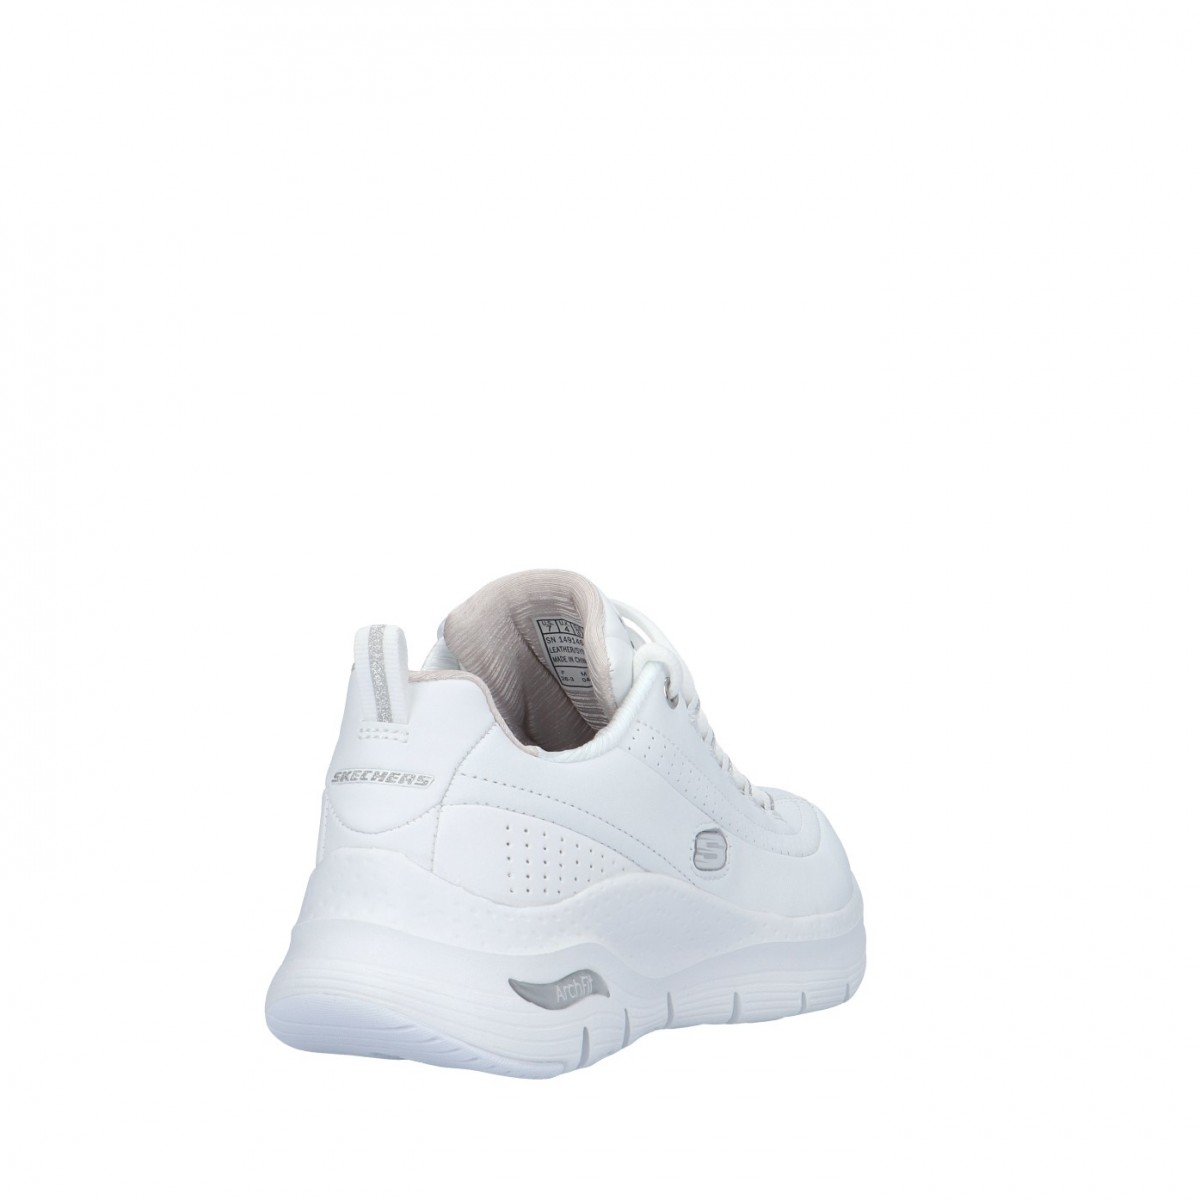 Skechers Sneaker Bianco/argento Gomma 149146